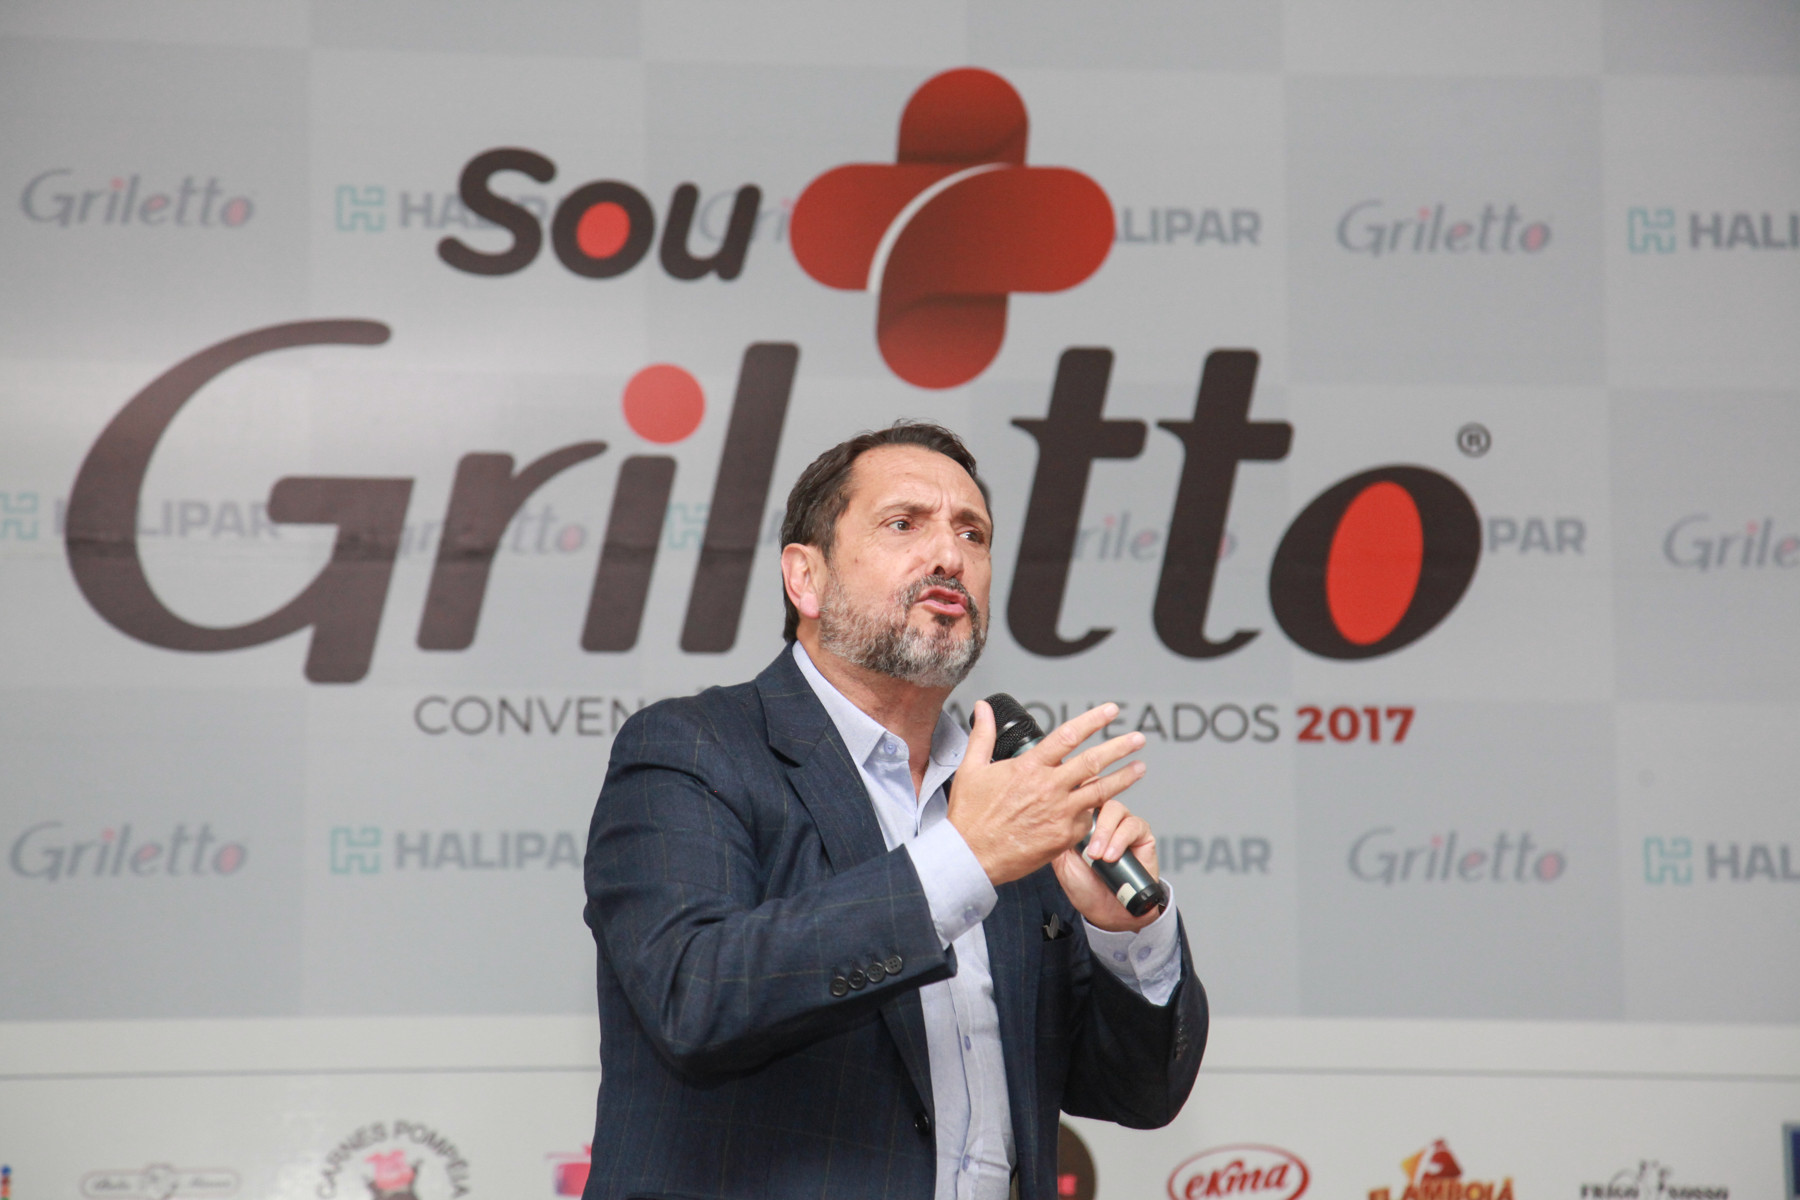 Griletto realiza convenção de franqueados em Indaiatuba